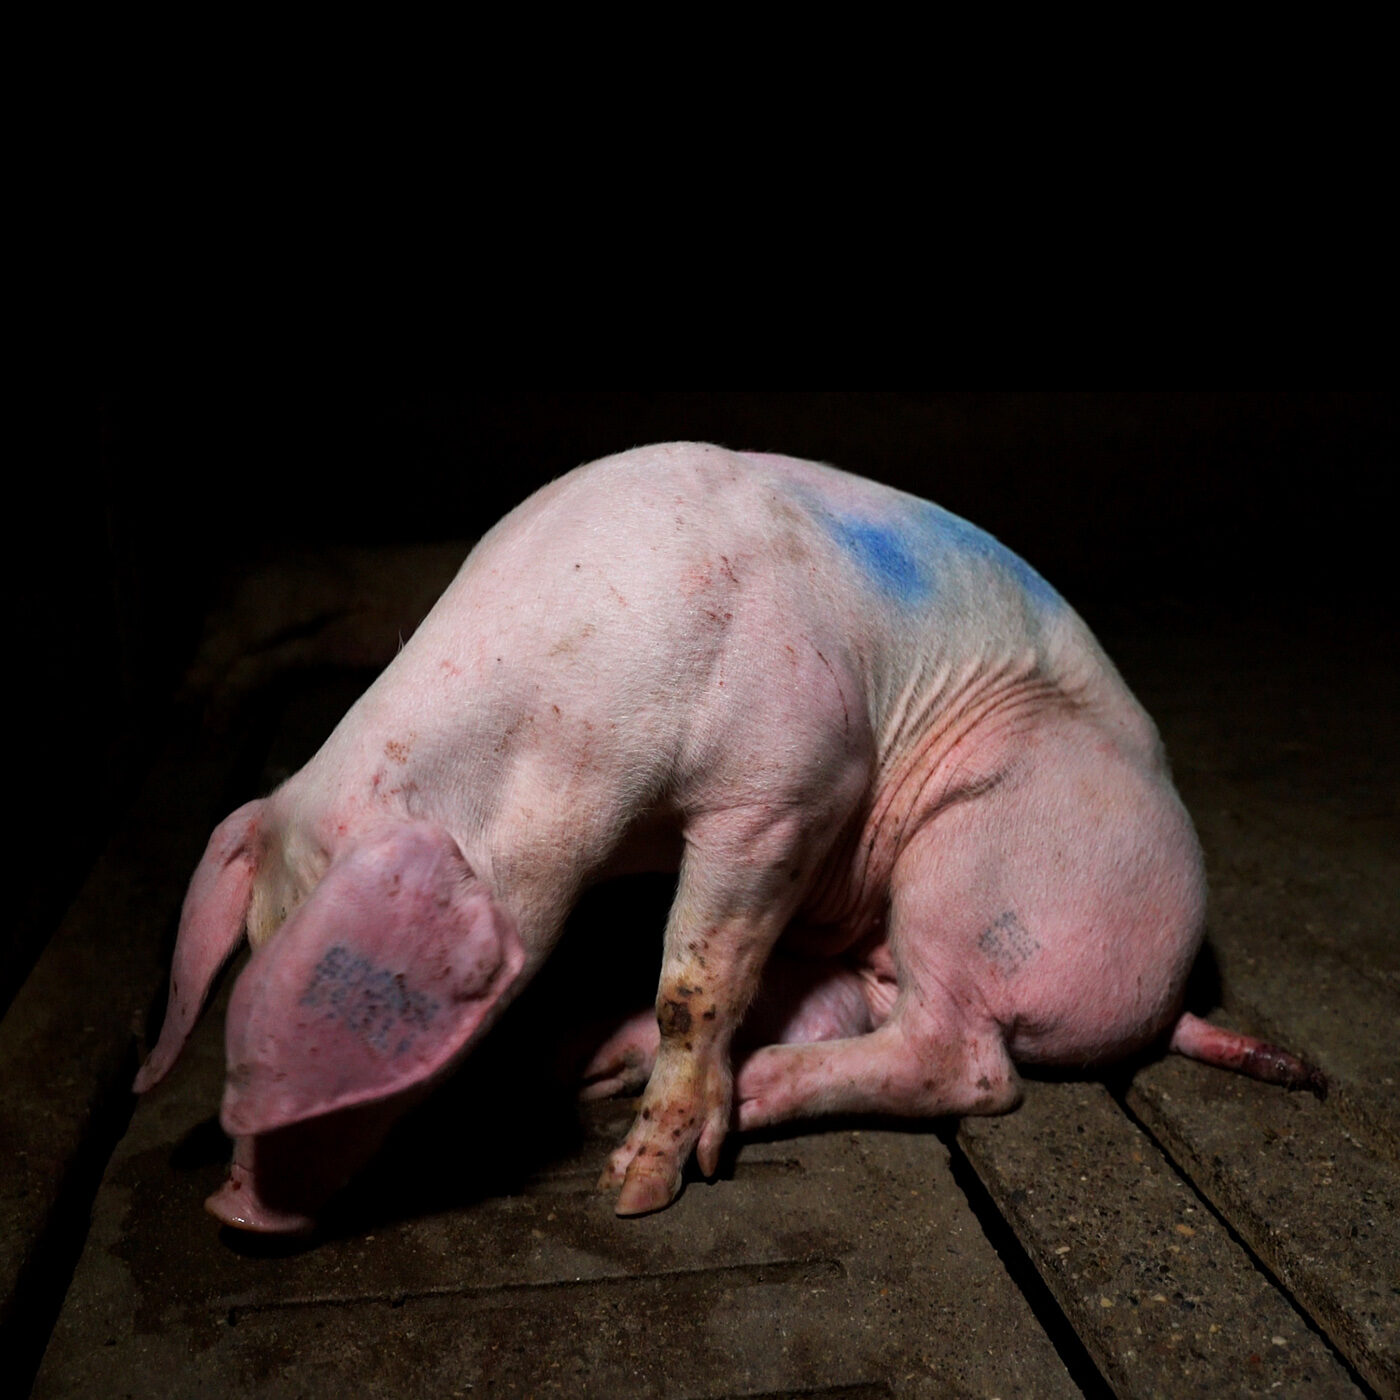 Animales momificados y cerdos sufriendo encontrados en una granja italiana